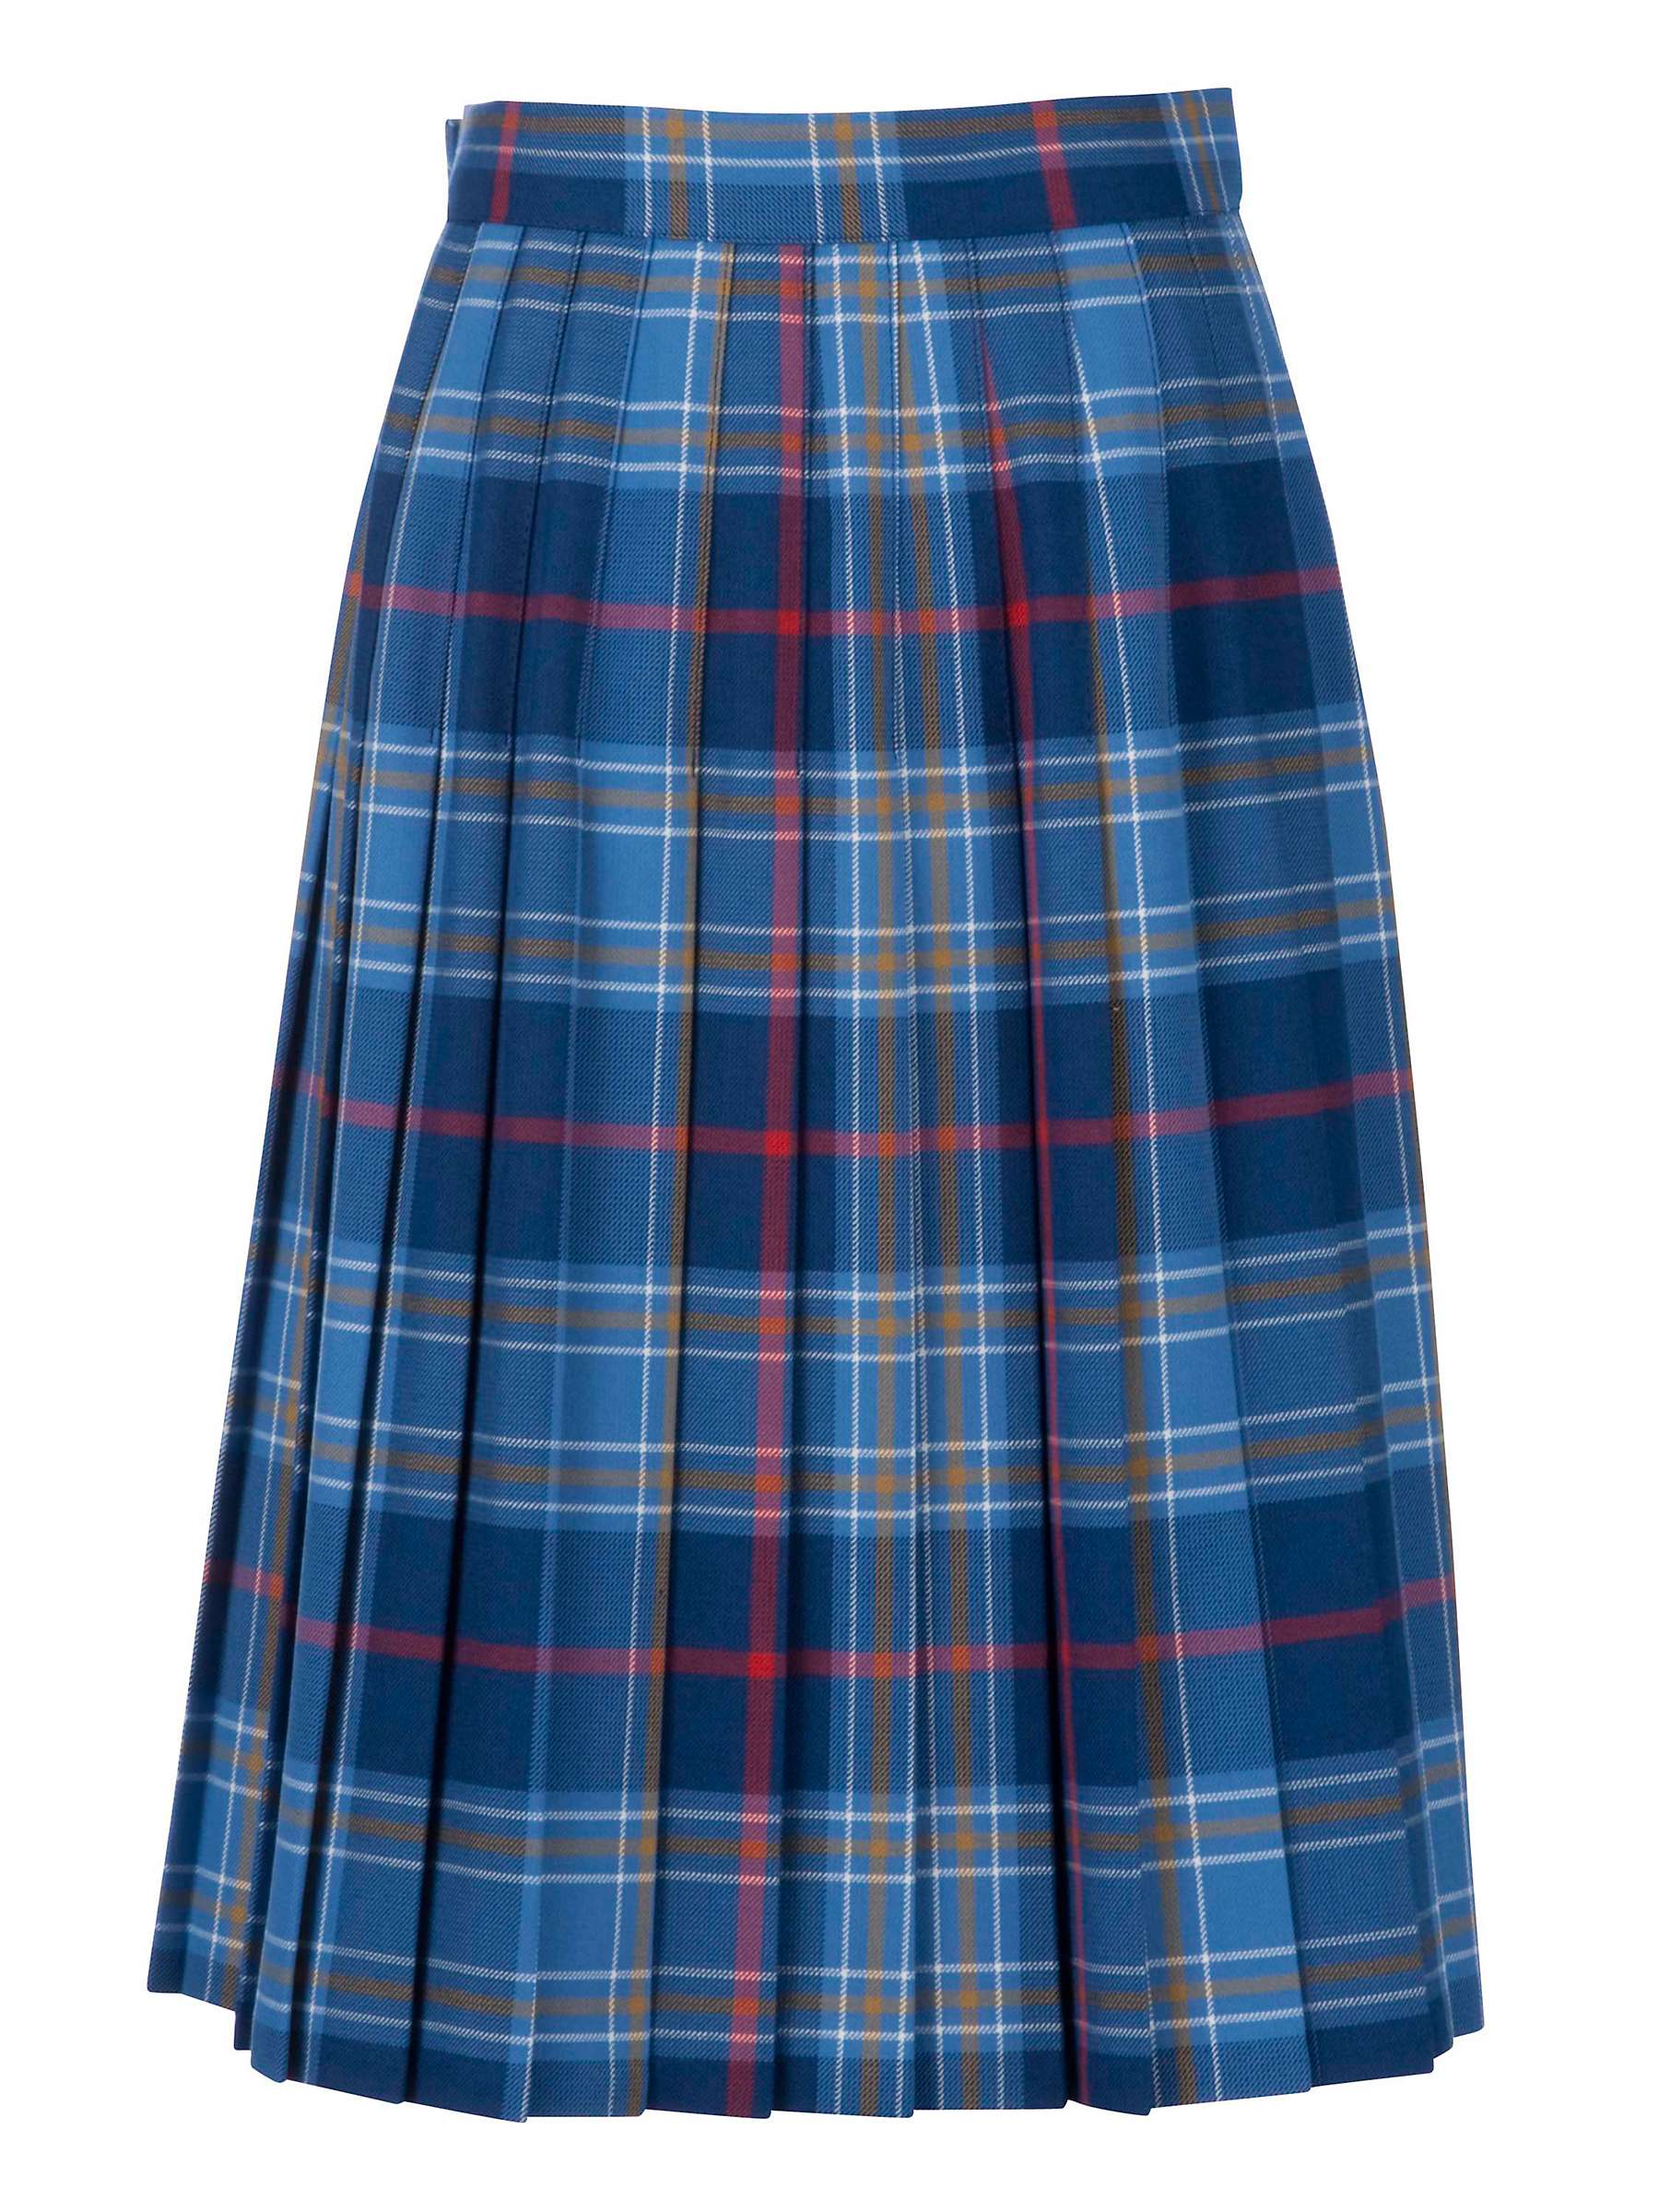 Buy Sherborne House School Girls' Tartan Kilt, Blue/Multi Online at johnlewis.com